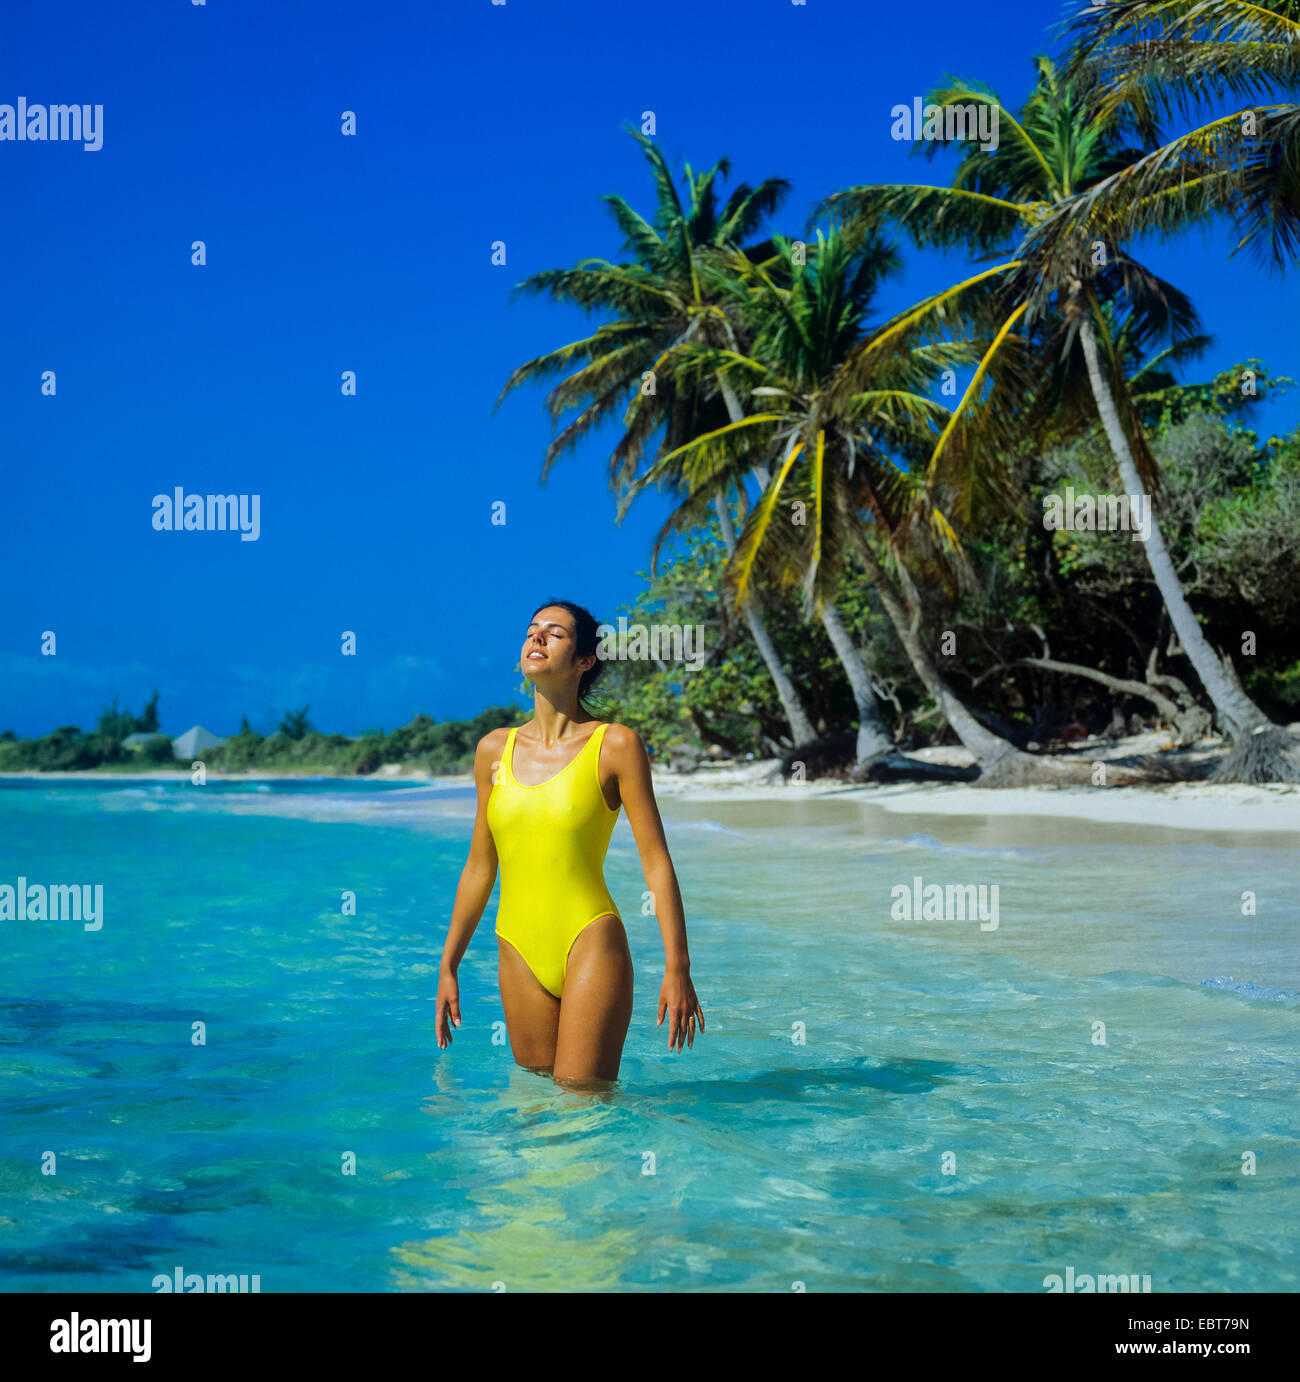 Jeune femme debout dans l'eau peu profonde de la mer des Caraïbes et plage tropicale avec palmiers Guadeloupe Banque D'Images